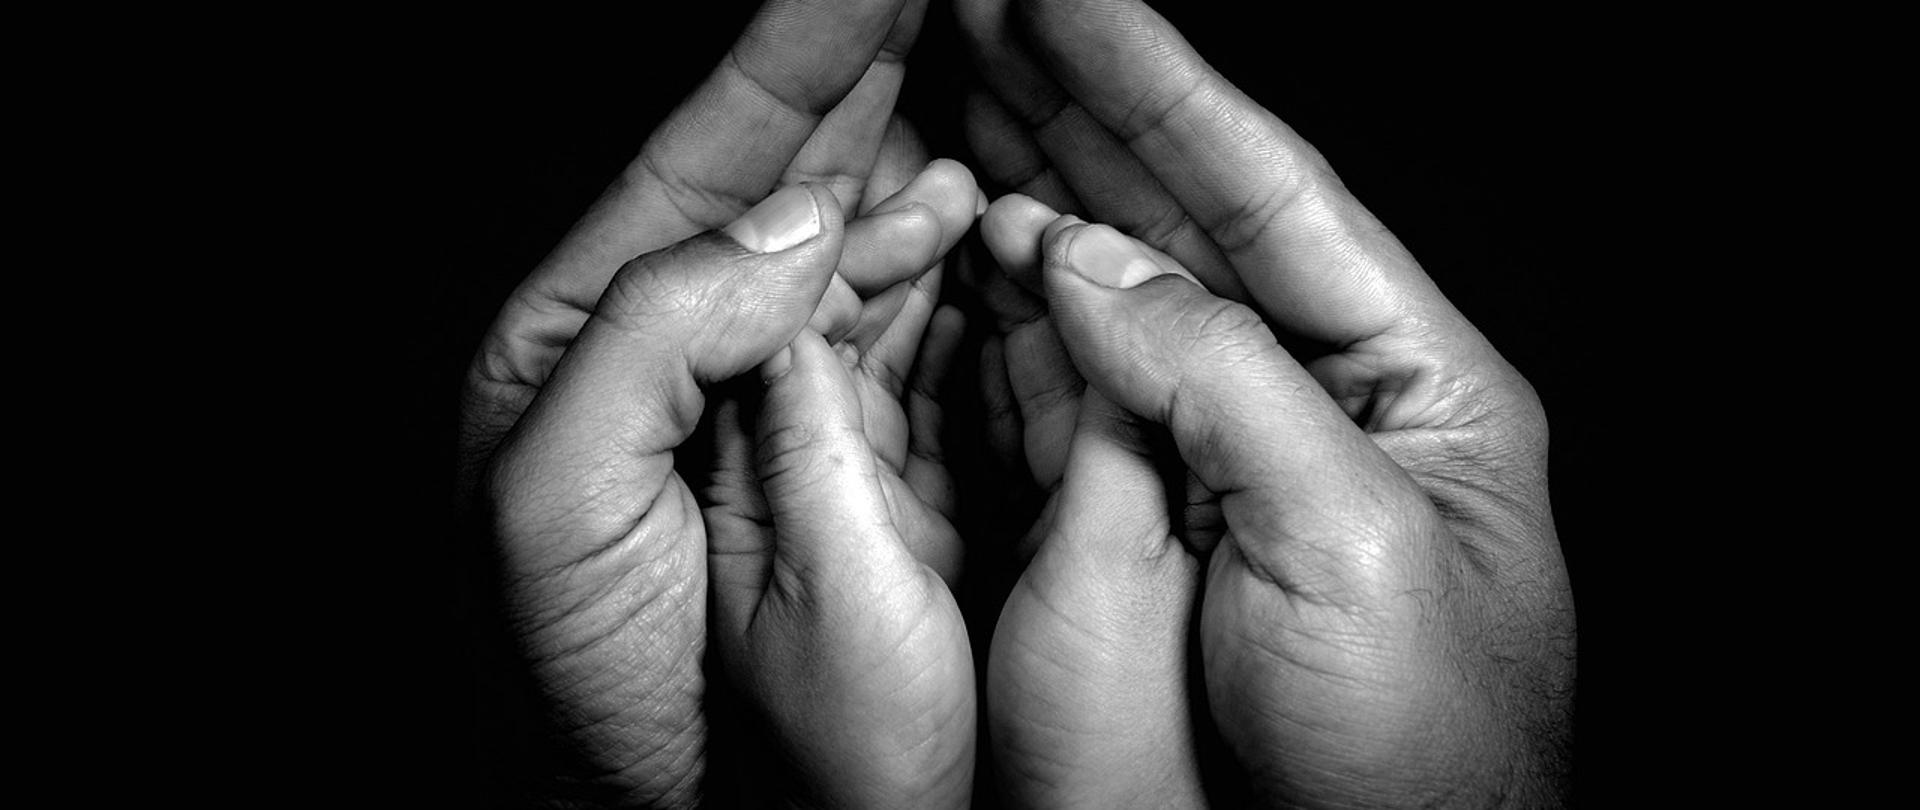 Czarno-białe zdjęcie dłoni dorosłej osoby obejmujących dłonie dziecka